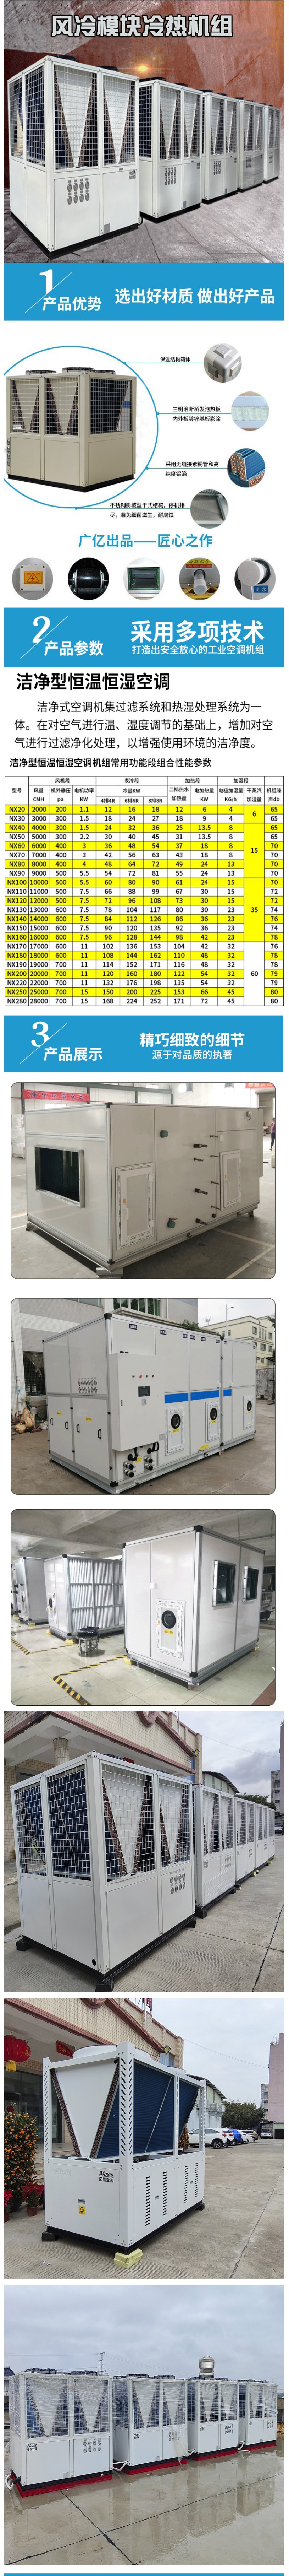 中央空调风冷模块机组低温智能化控制车间热泵机组冷热水空调主机.jpg